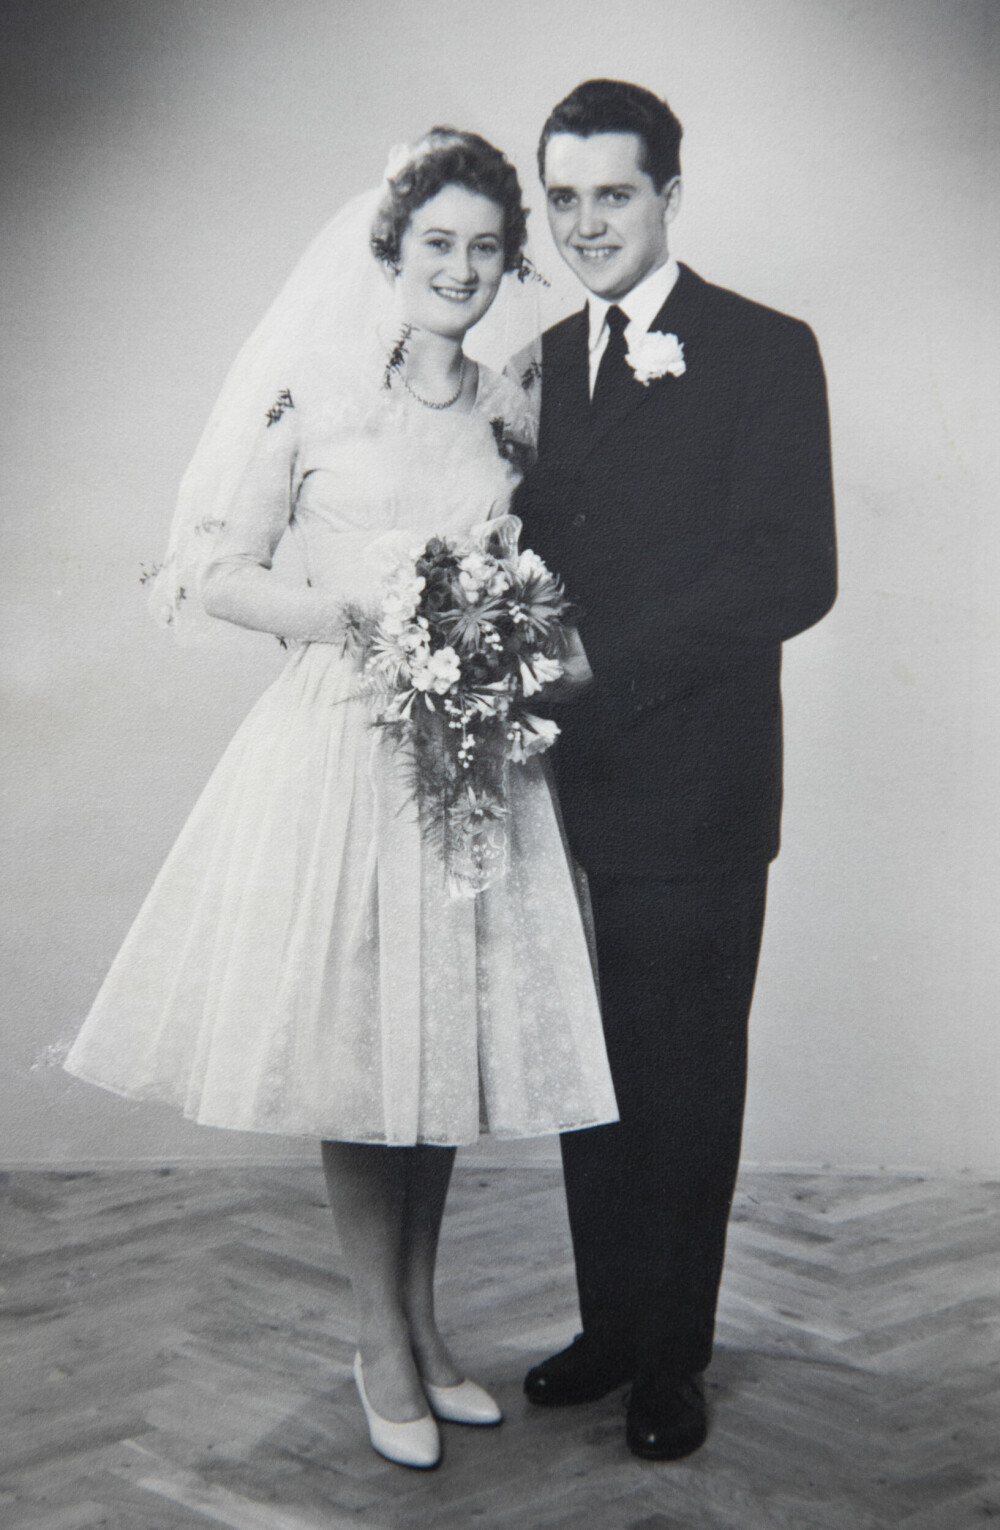 <b>BRUDEPAR:</b> Janes foreldre, Dora og Kaj, giftet seg i 1960. Janes mor bar en utradisjonell brudekjole – den var kort og lyseblå.